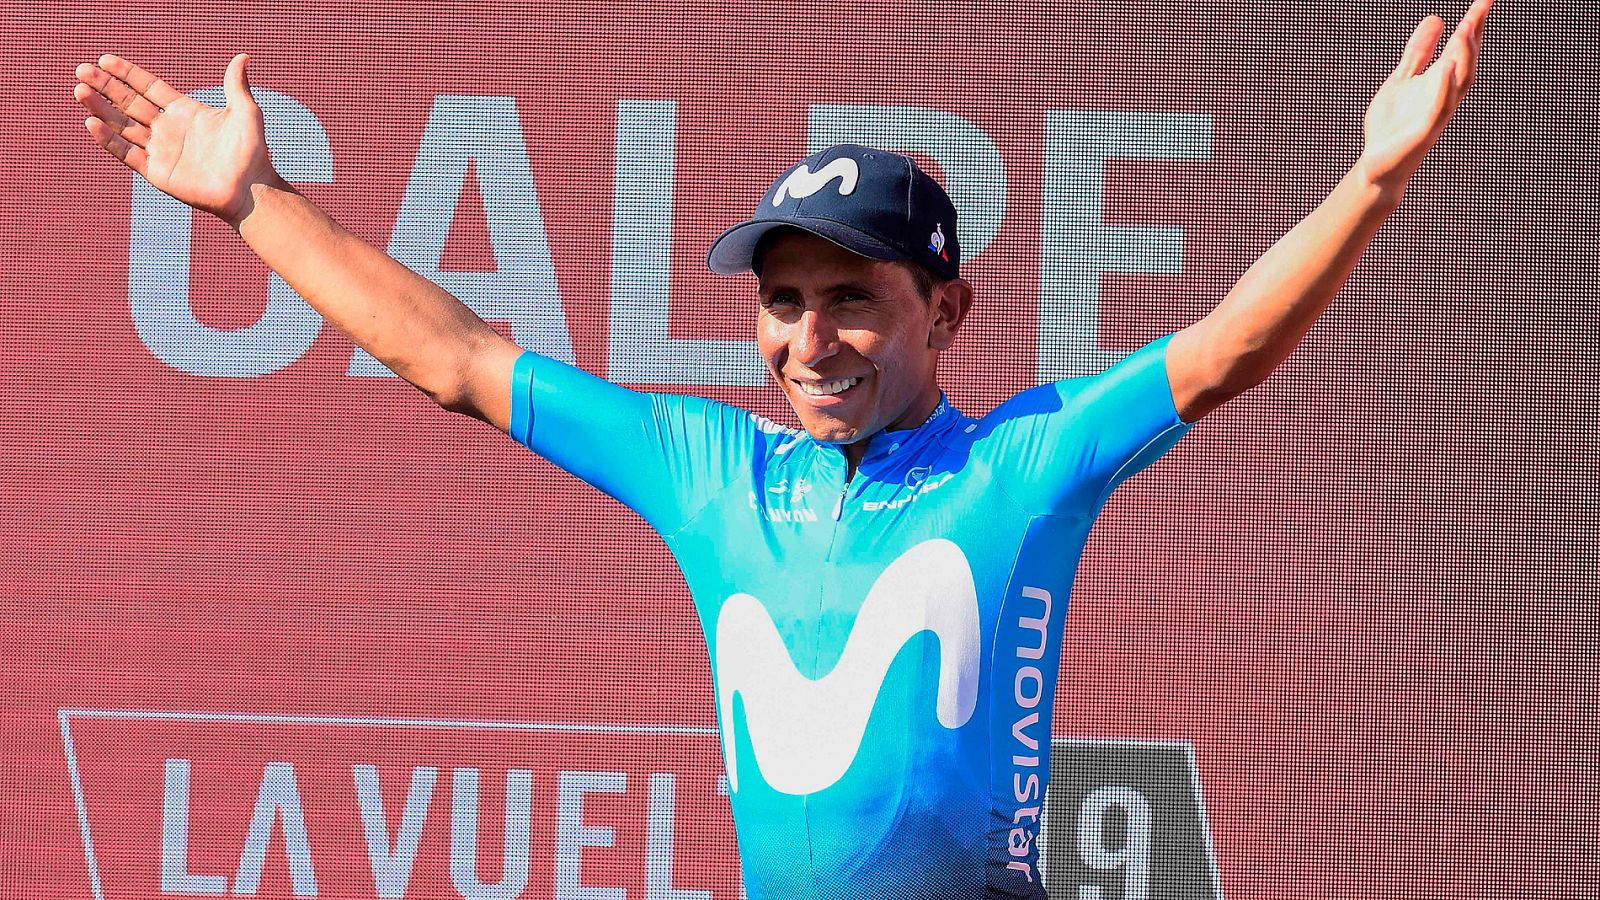 El colombiano Nairo Quintana ha ganado la segunda etapa de la Vuelta, con final en Calpe. Una etapa que aupó al liderato a Nicolas Roche, que se vestirá de rojo.